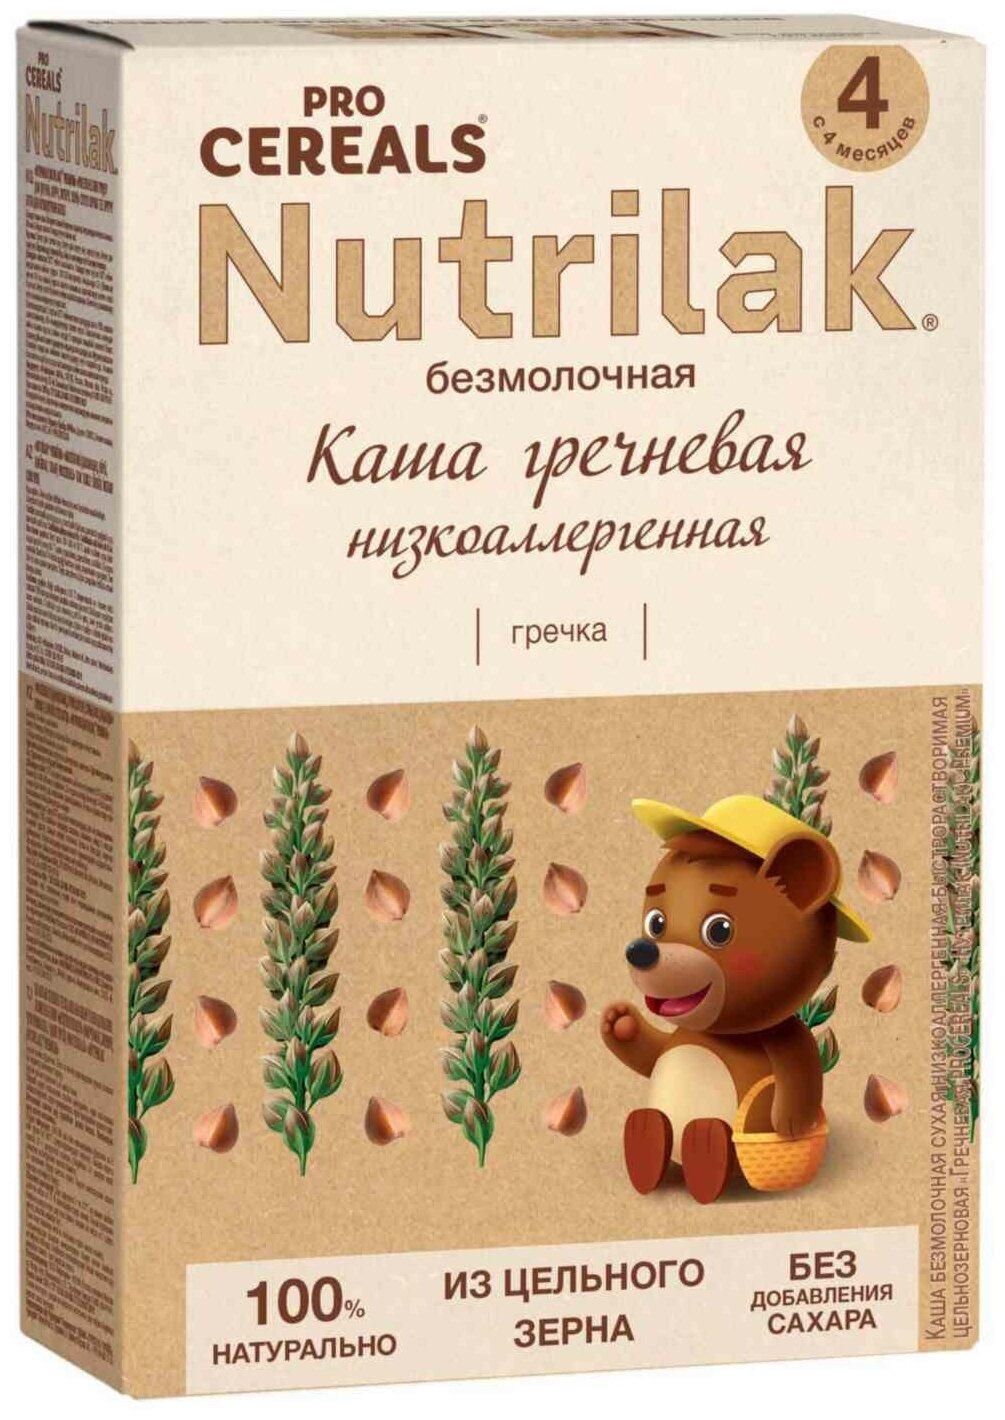 Каша гречневая Nutrilak Premium Pro Cereals цельнозерновая безмолочная, 200гр - фото №13